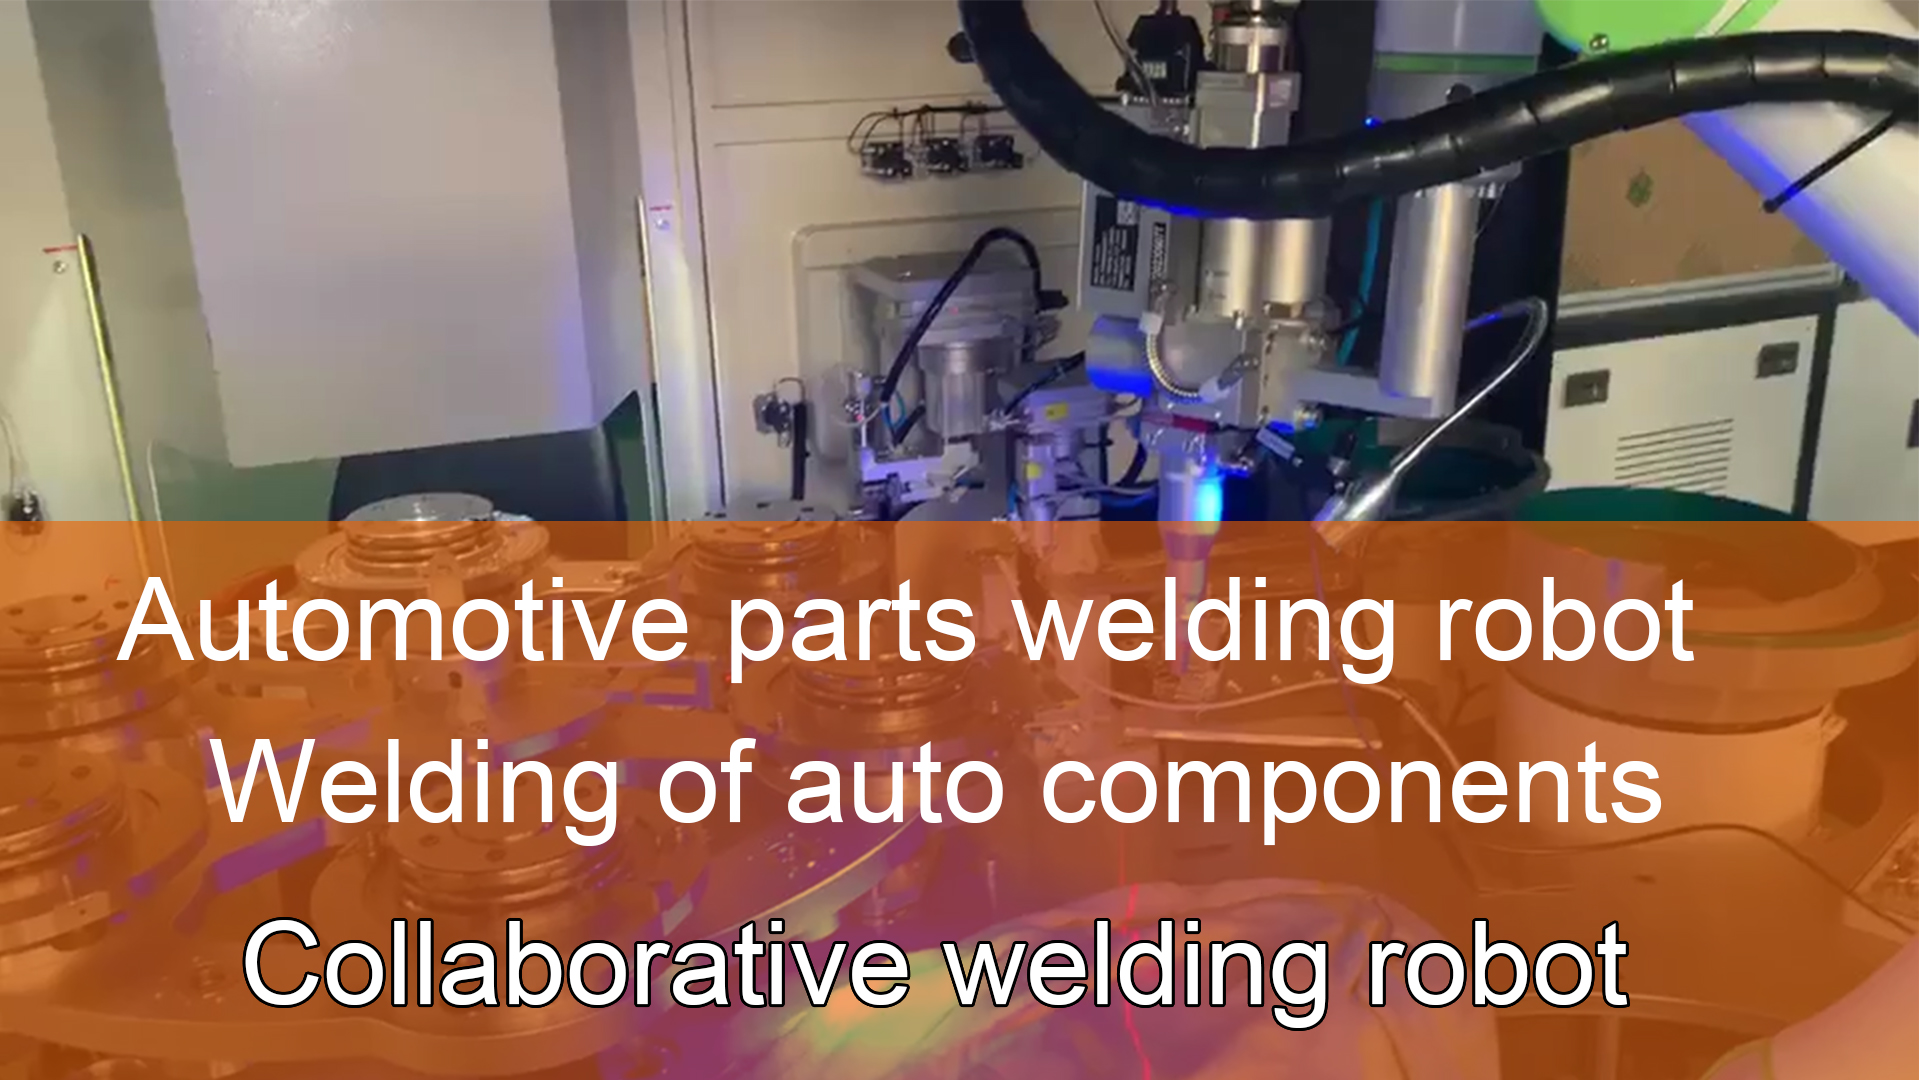 Коллаборативный сварочный робот | Сварка автомобильных компонентов | Робот для сварки автомобильных деталей